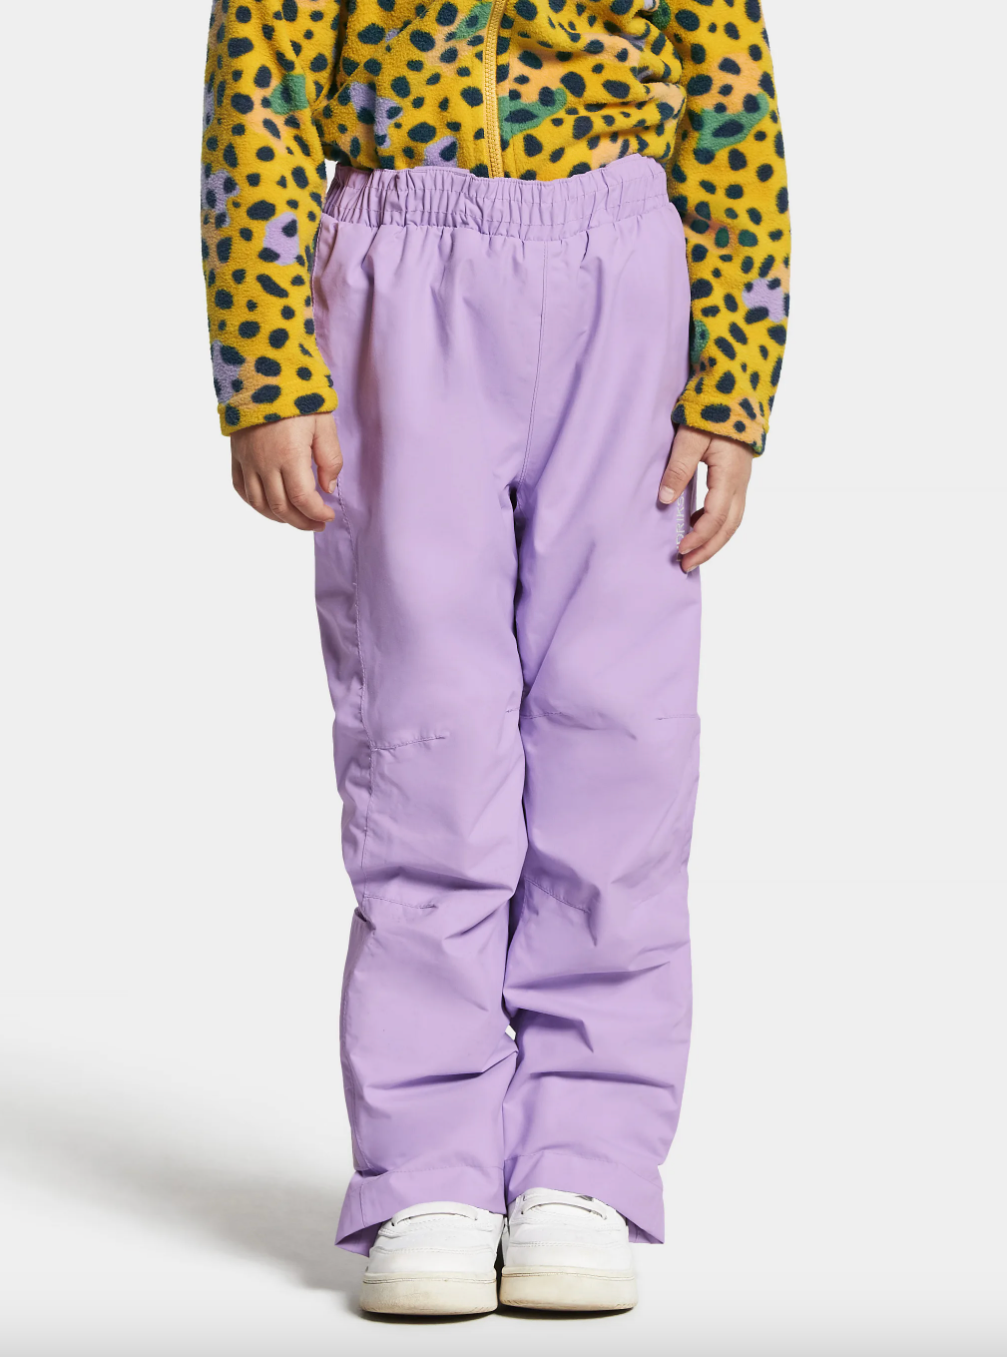 Didriksons Kids Idur 2 Waterproof Trousers (Digital Purple)(Ages 1-7)